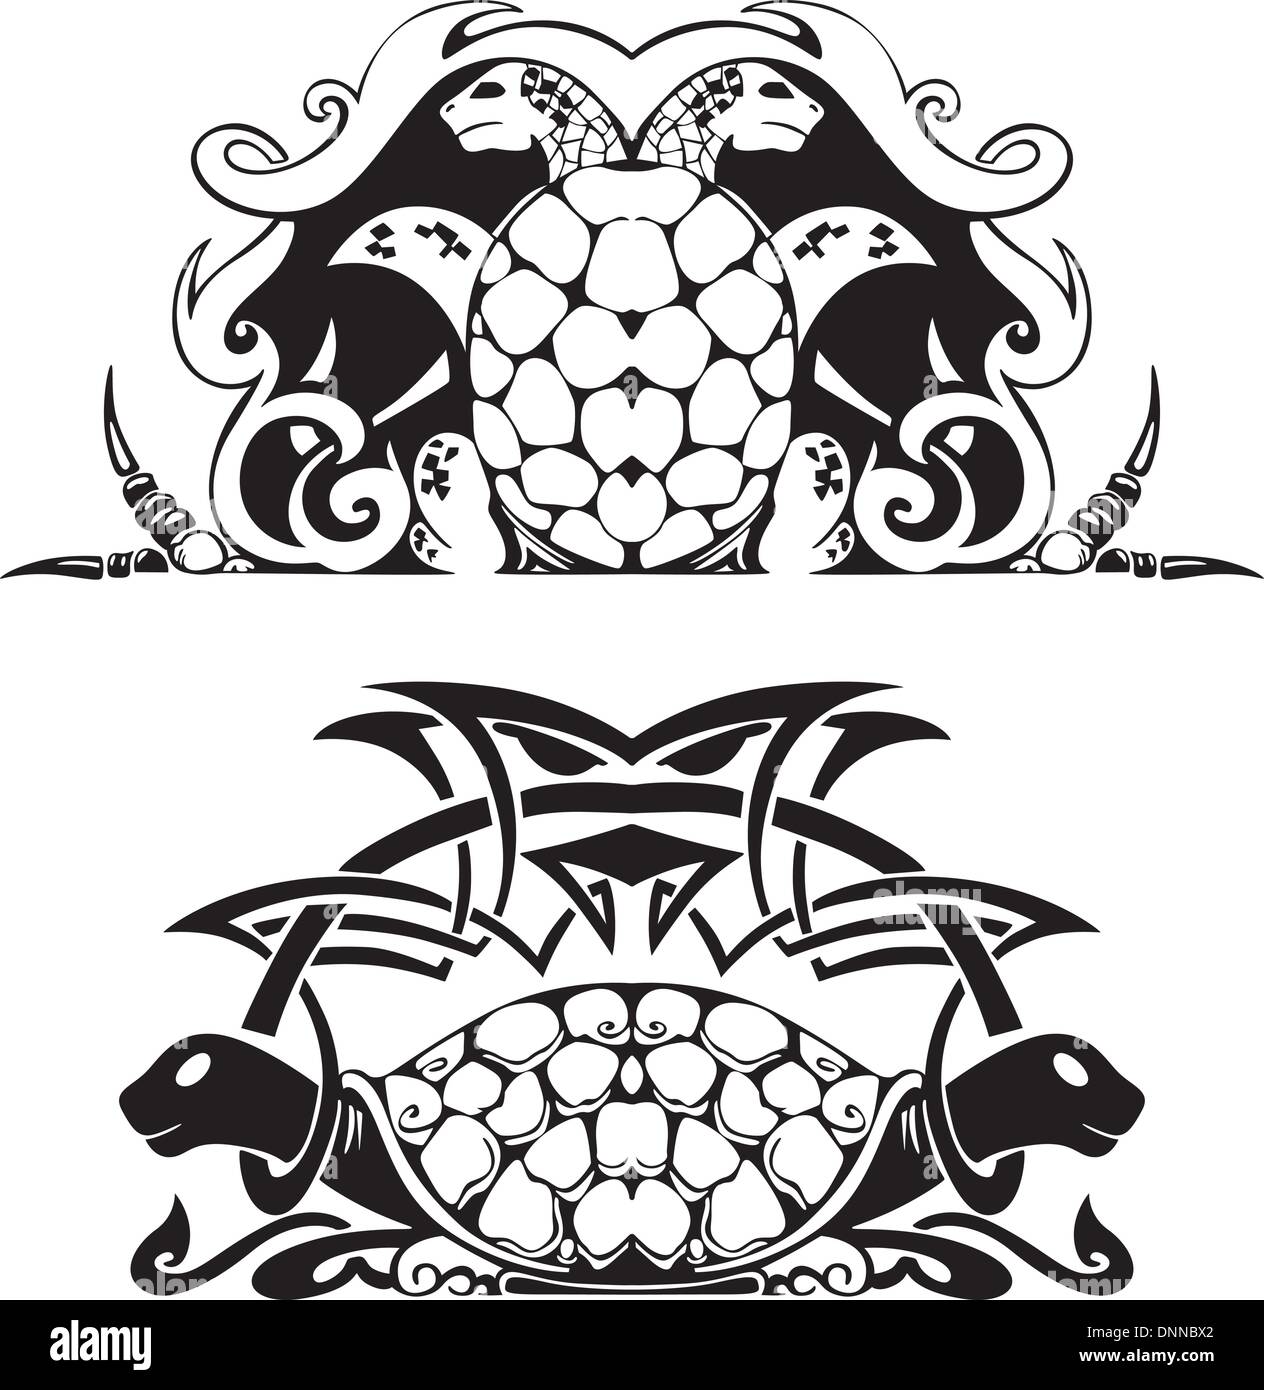 Vignette symétrique stylisé avec les tortues. Illustration vecteur EPS8 Illustration de Vecteur